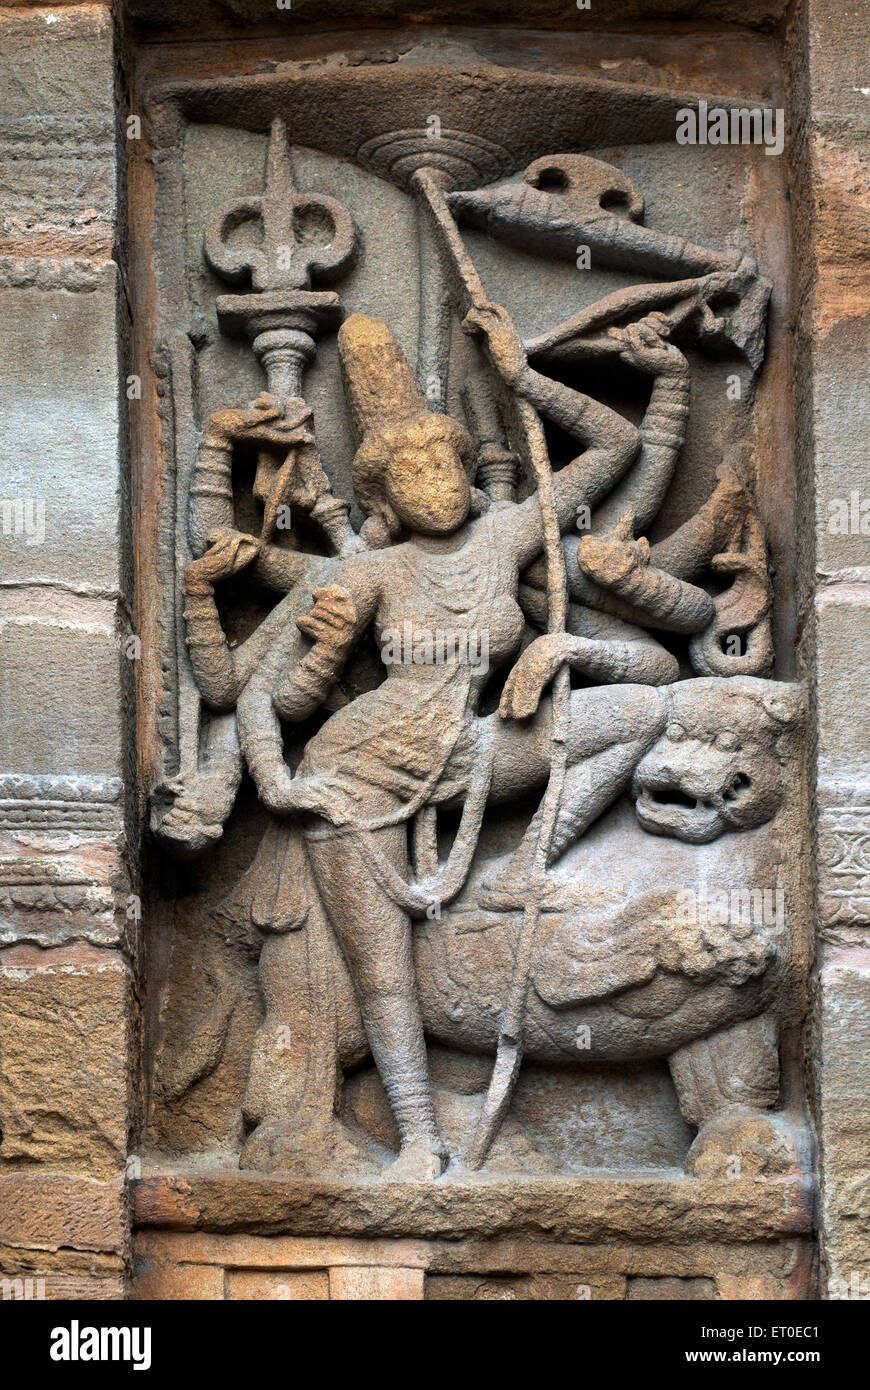 Déesse majestueuse équitation sur Lion de Kailasanatha temple de Kanchipuram kancheepuram ; ; ; ; Tamil Nadu Inde Banque D'Images